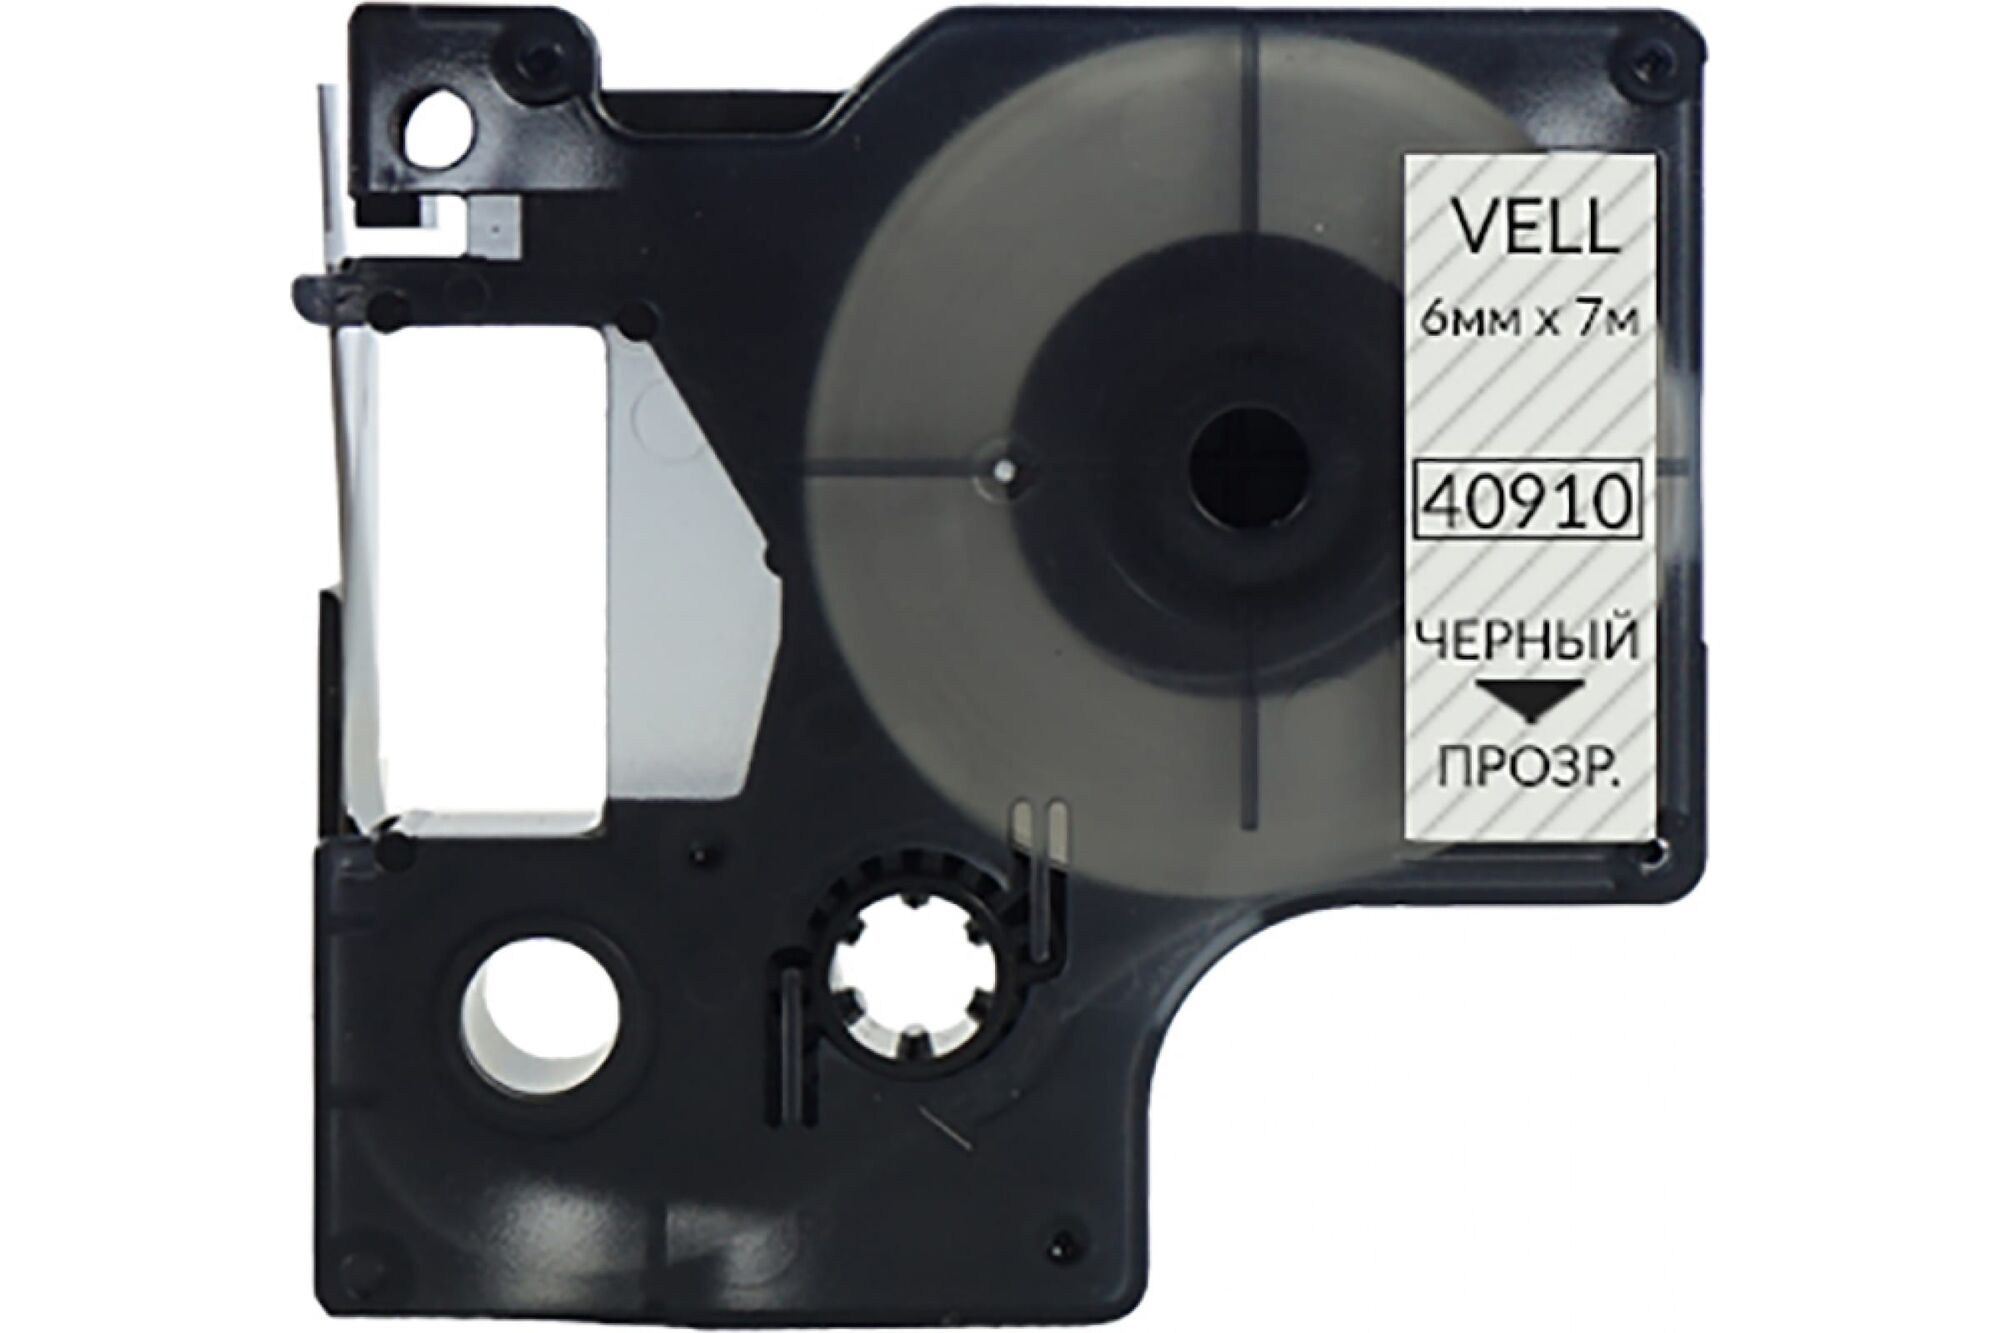 Лента Vell VL-D-S0720770/43610 6 мм, черный на прозрачном, для LM 210D/PnP/280/420P/500TS/Rhino 328646